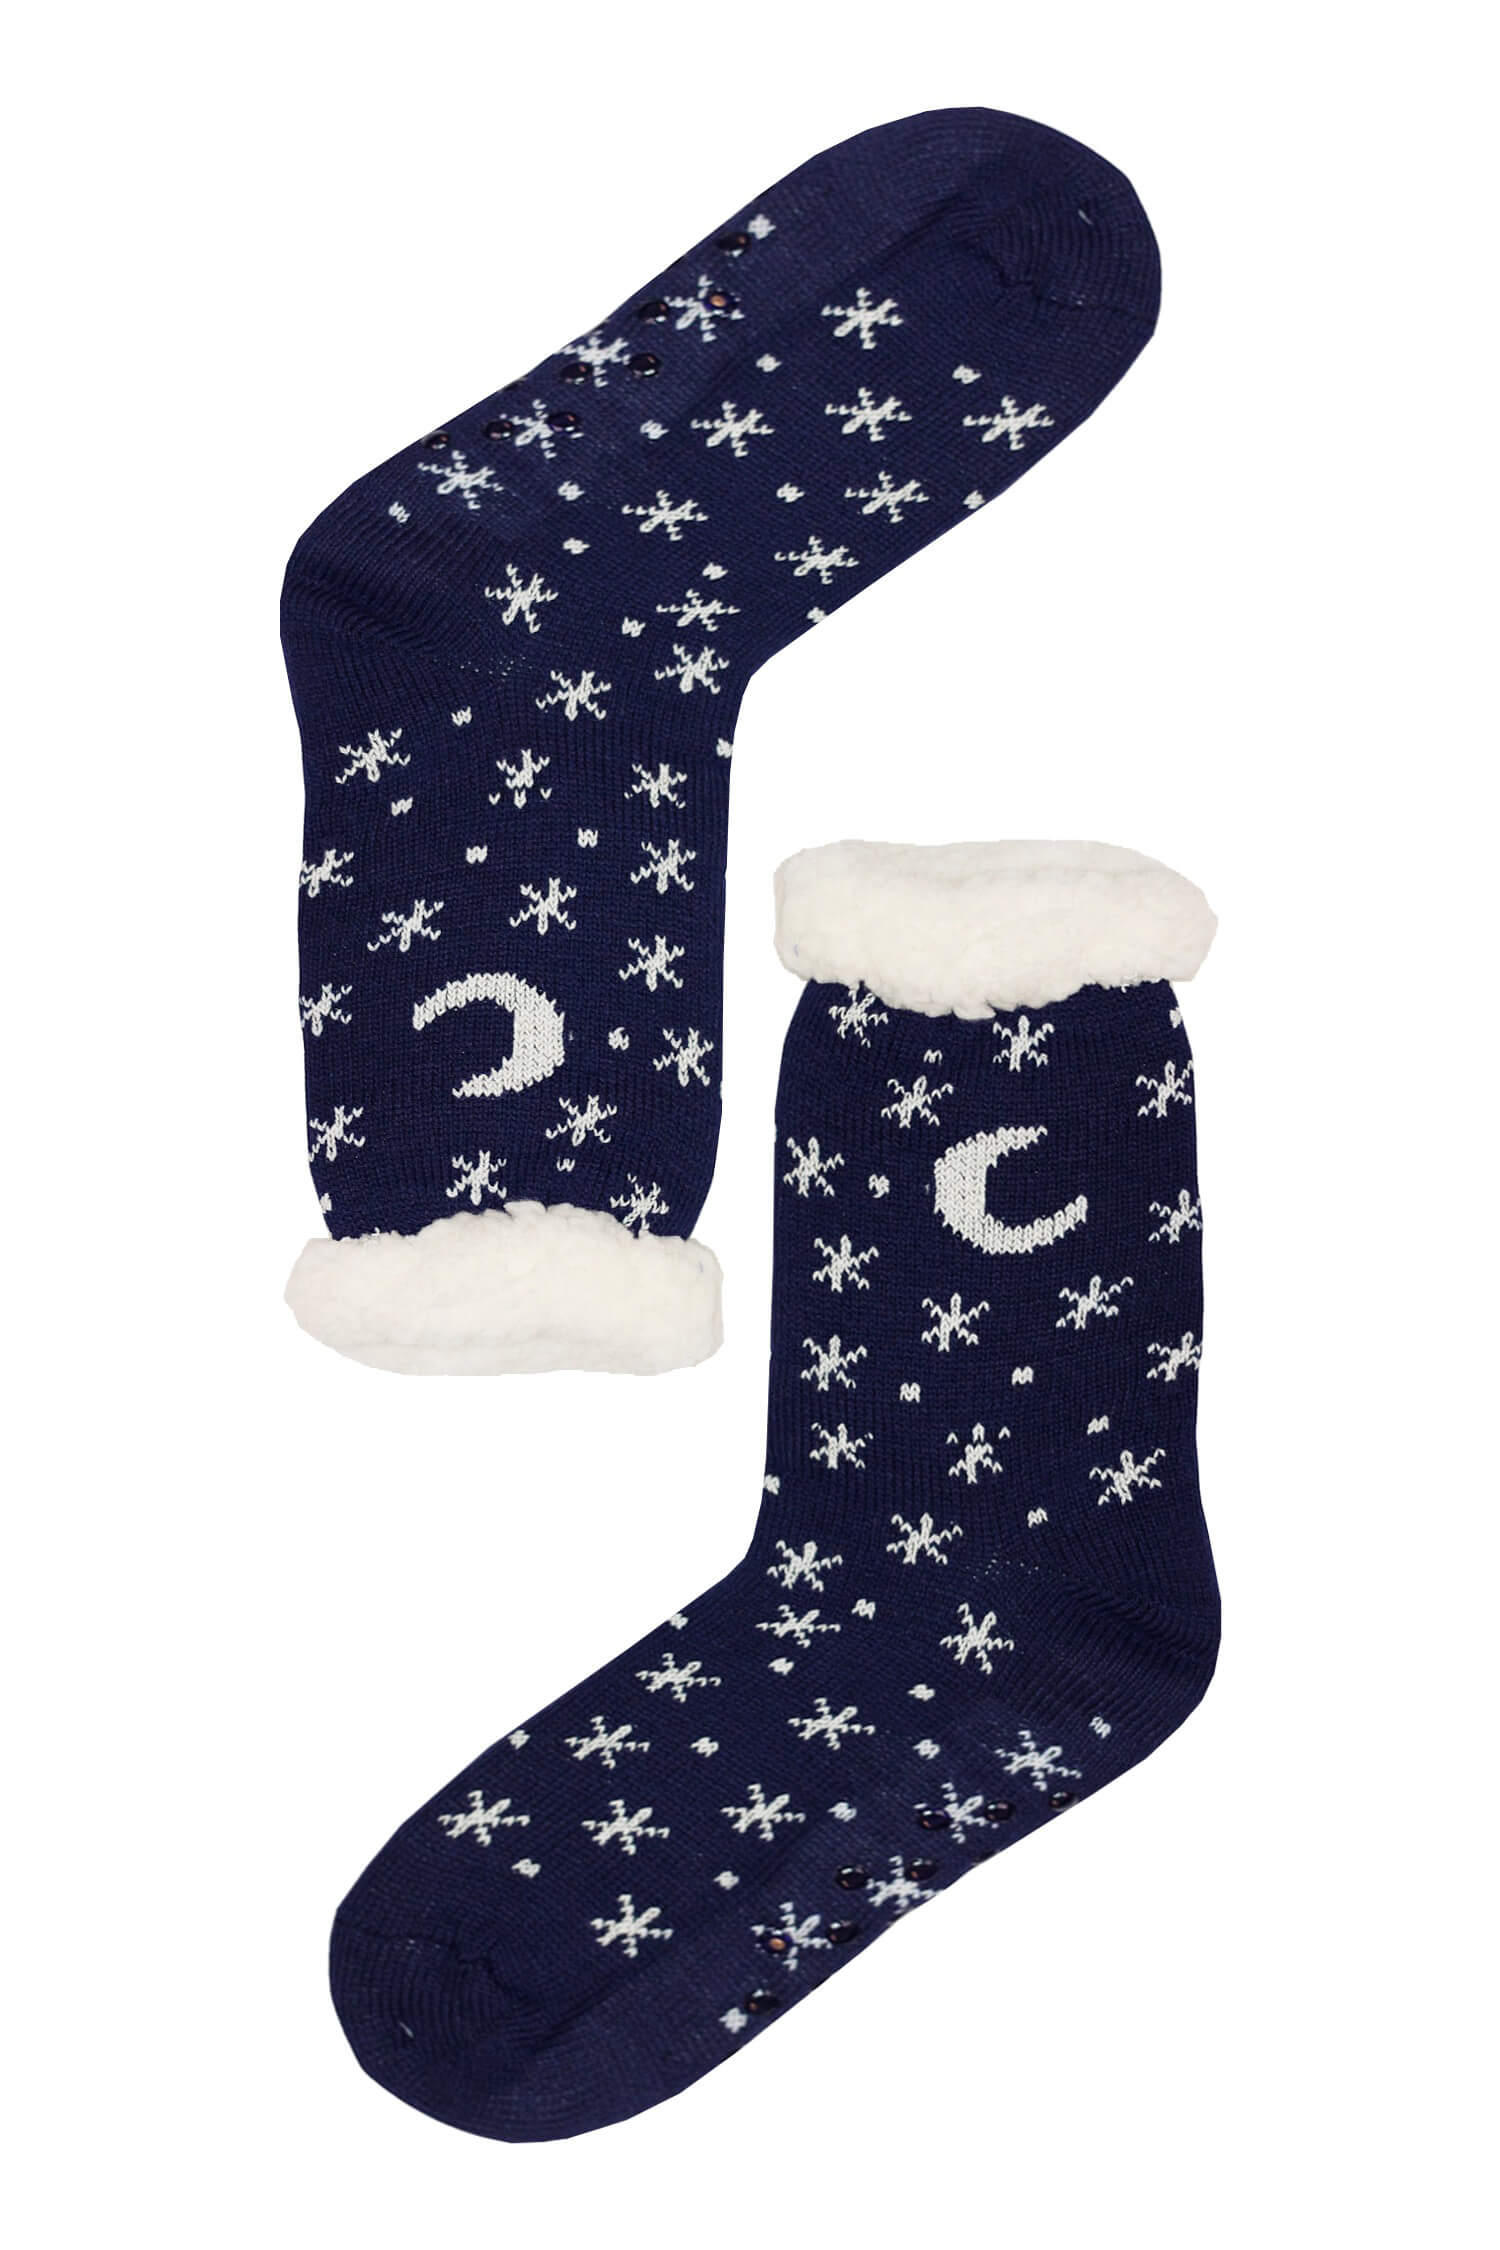 Mounty blue hřejivé ponožky beránek WW058 tmavě modrá 35-38